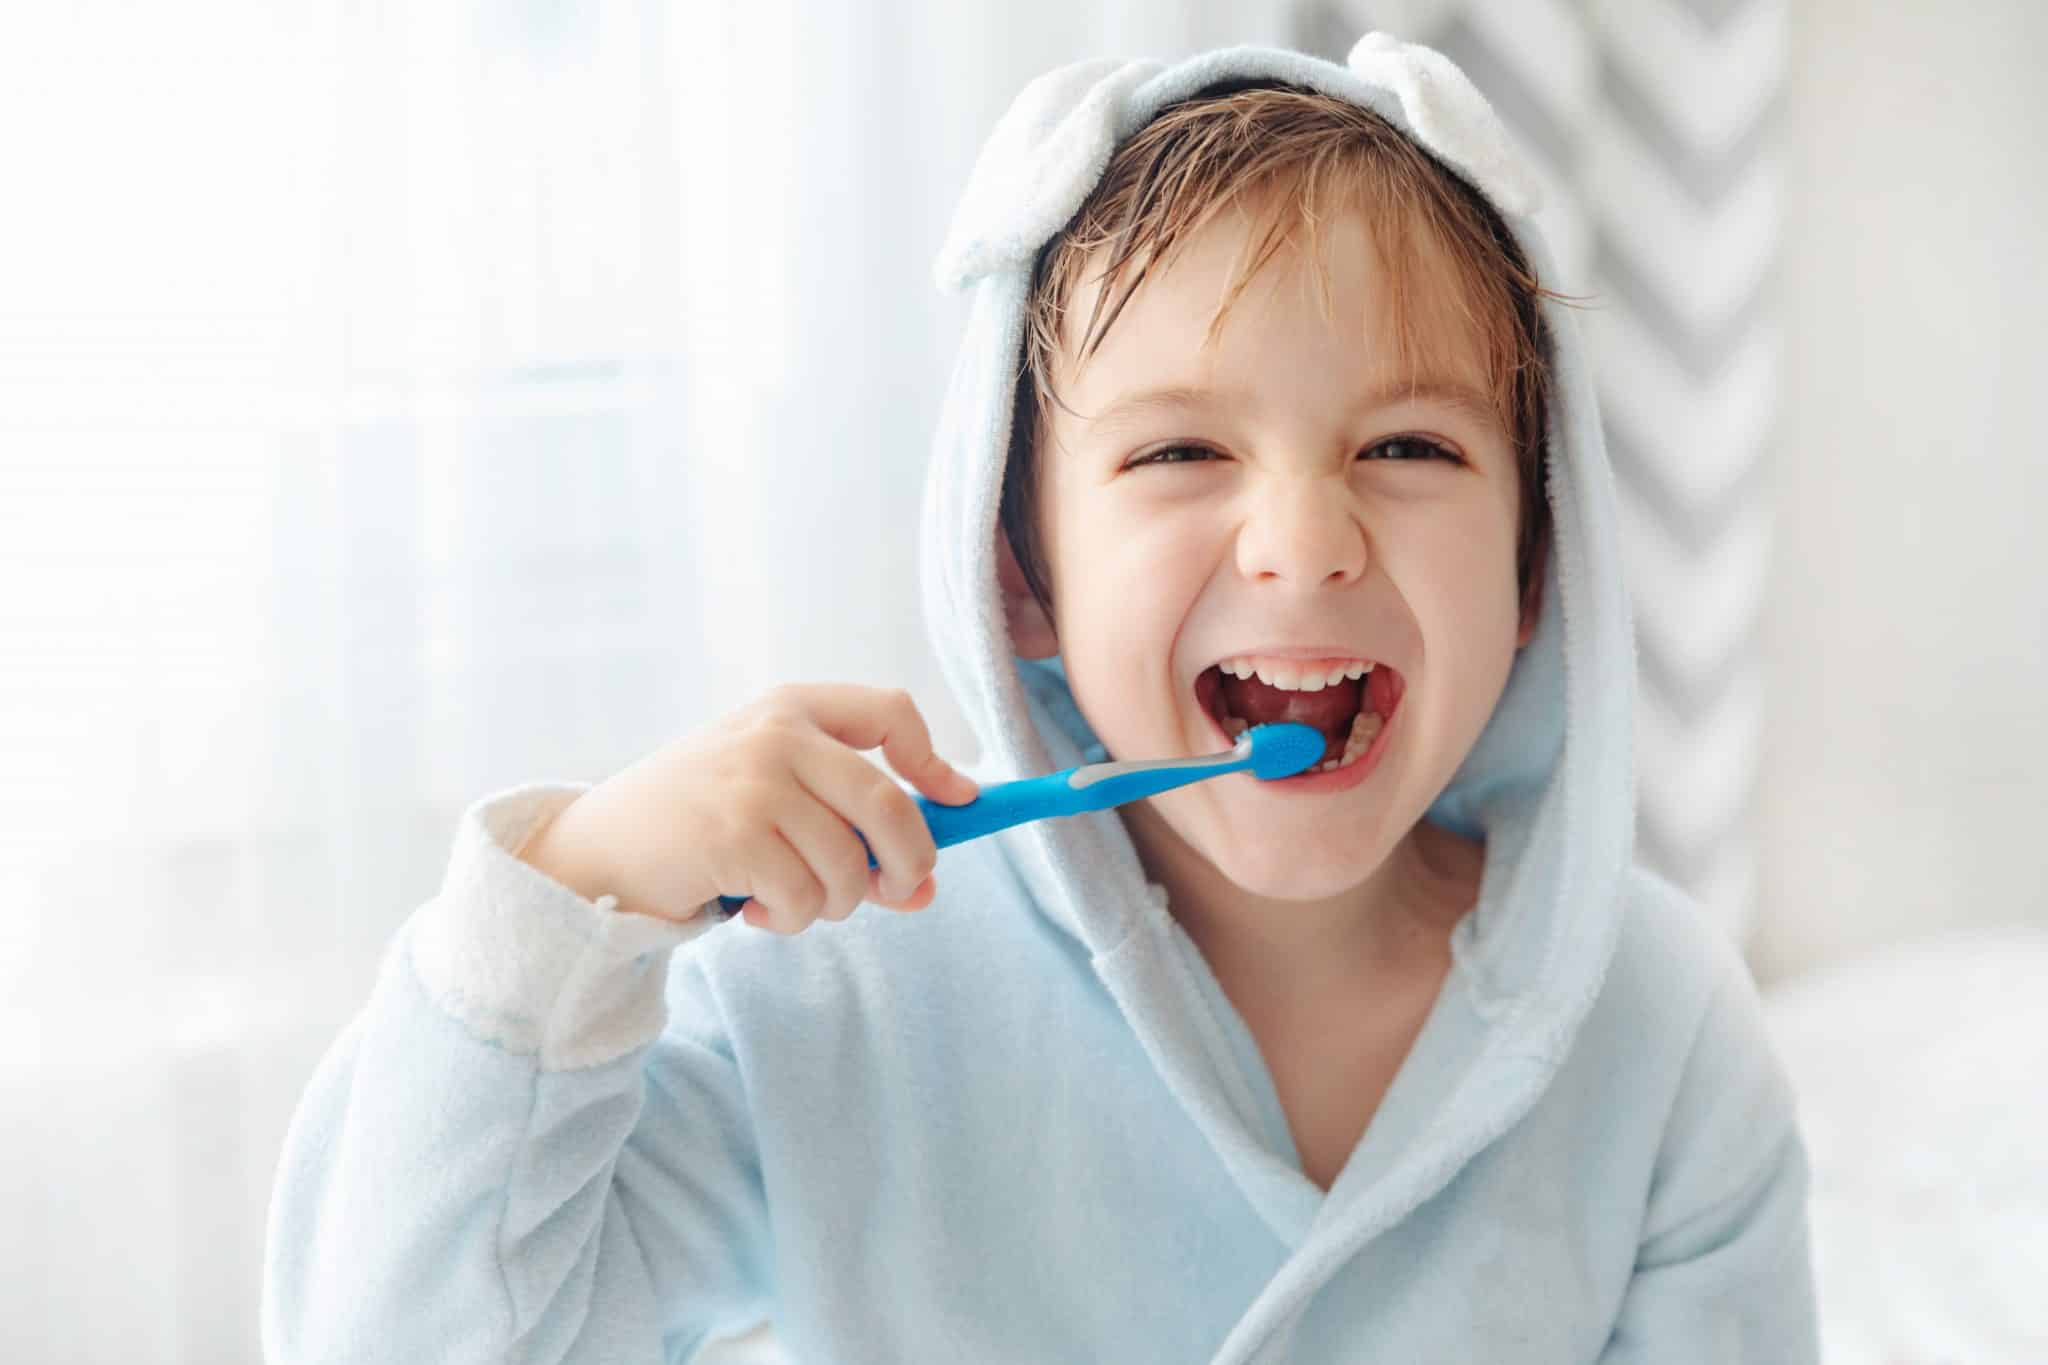 Ein lachendes Kind im Badmantel putzt sich die Zähne mit einer Zahnbürste.